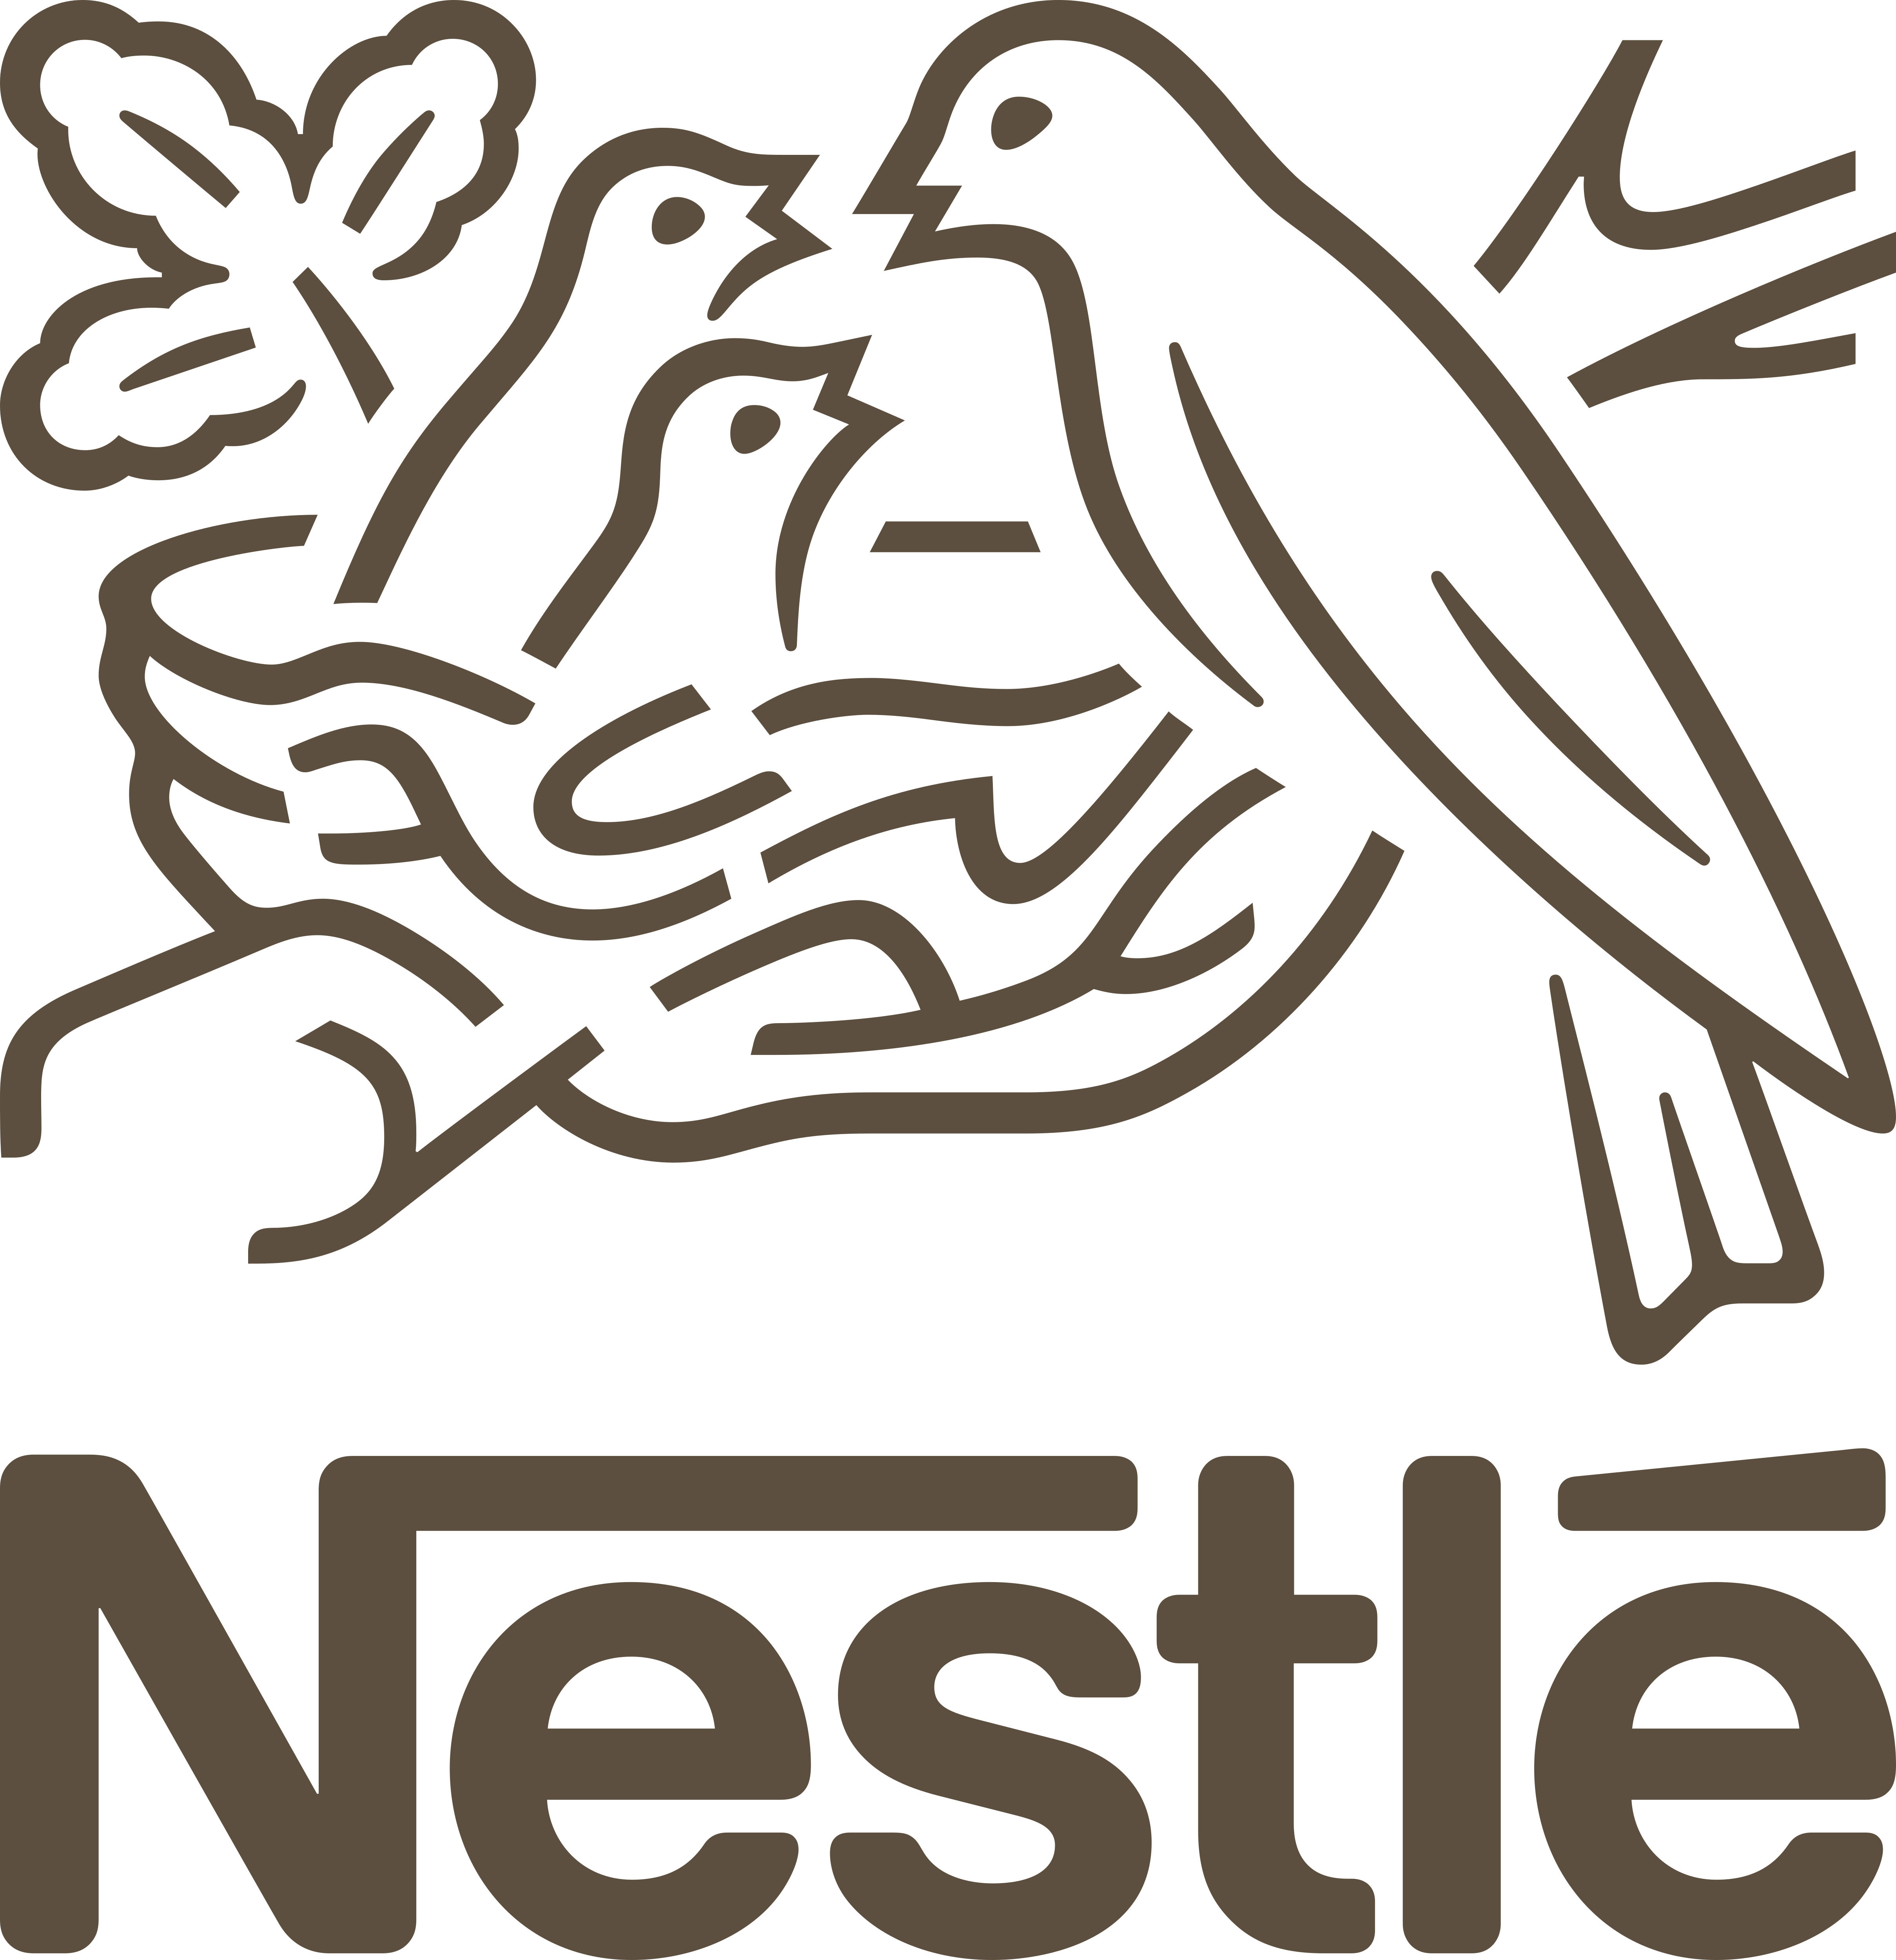 Nestlé USA Company Logo